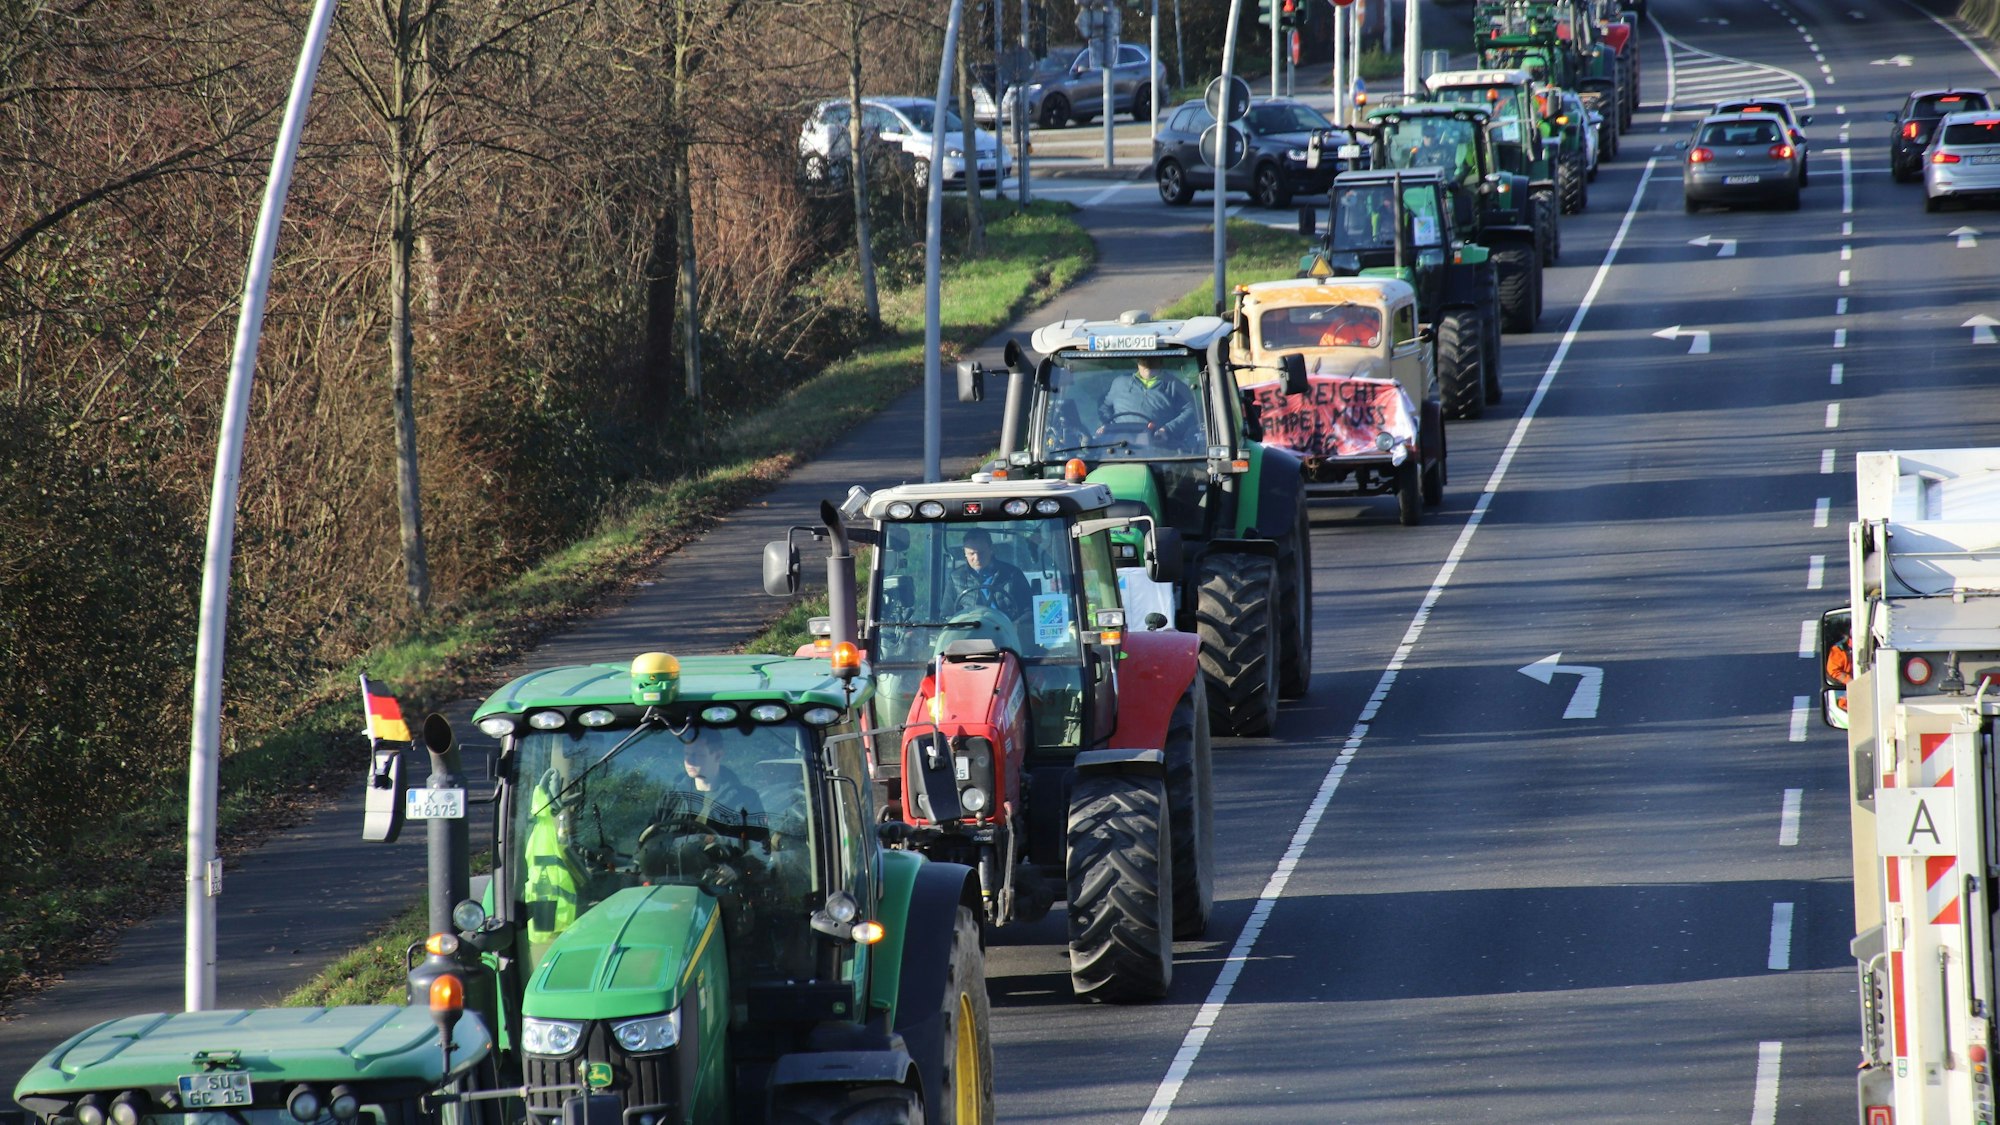 Bauernproteste im Rhein-Sieg-Kreis Anfang Januar. Mehrere Traktoren fahren in einer Reihe auf der Straße.